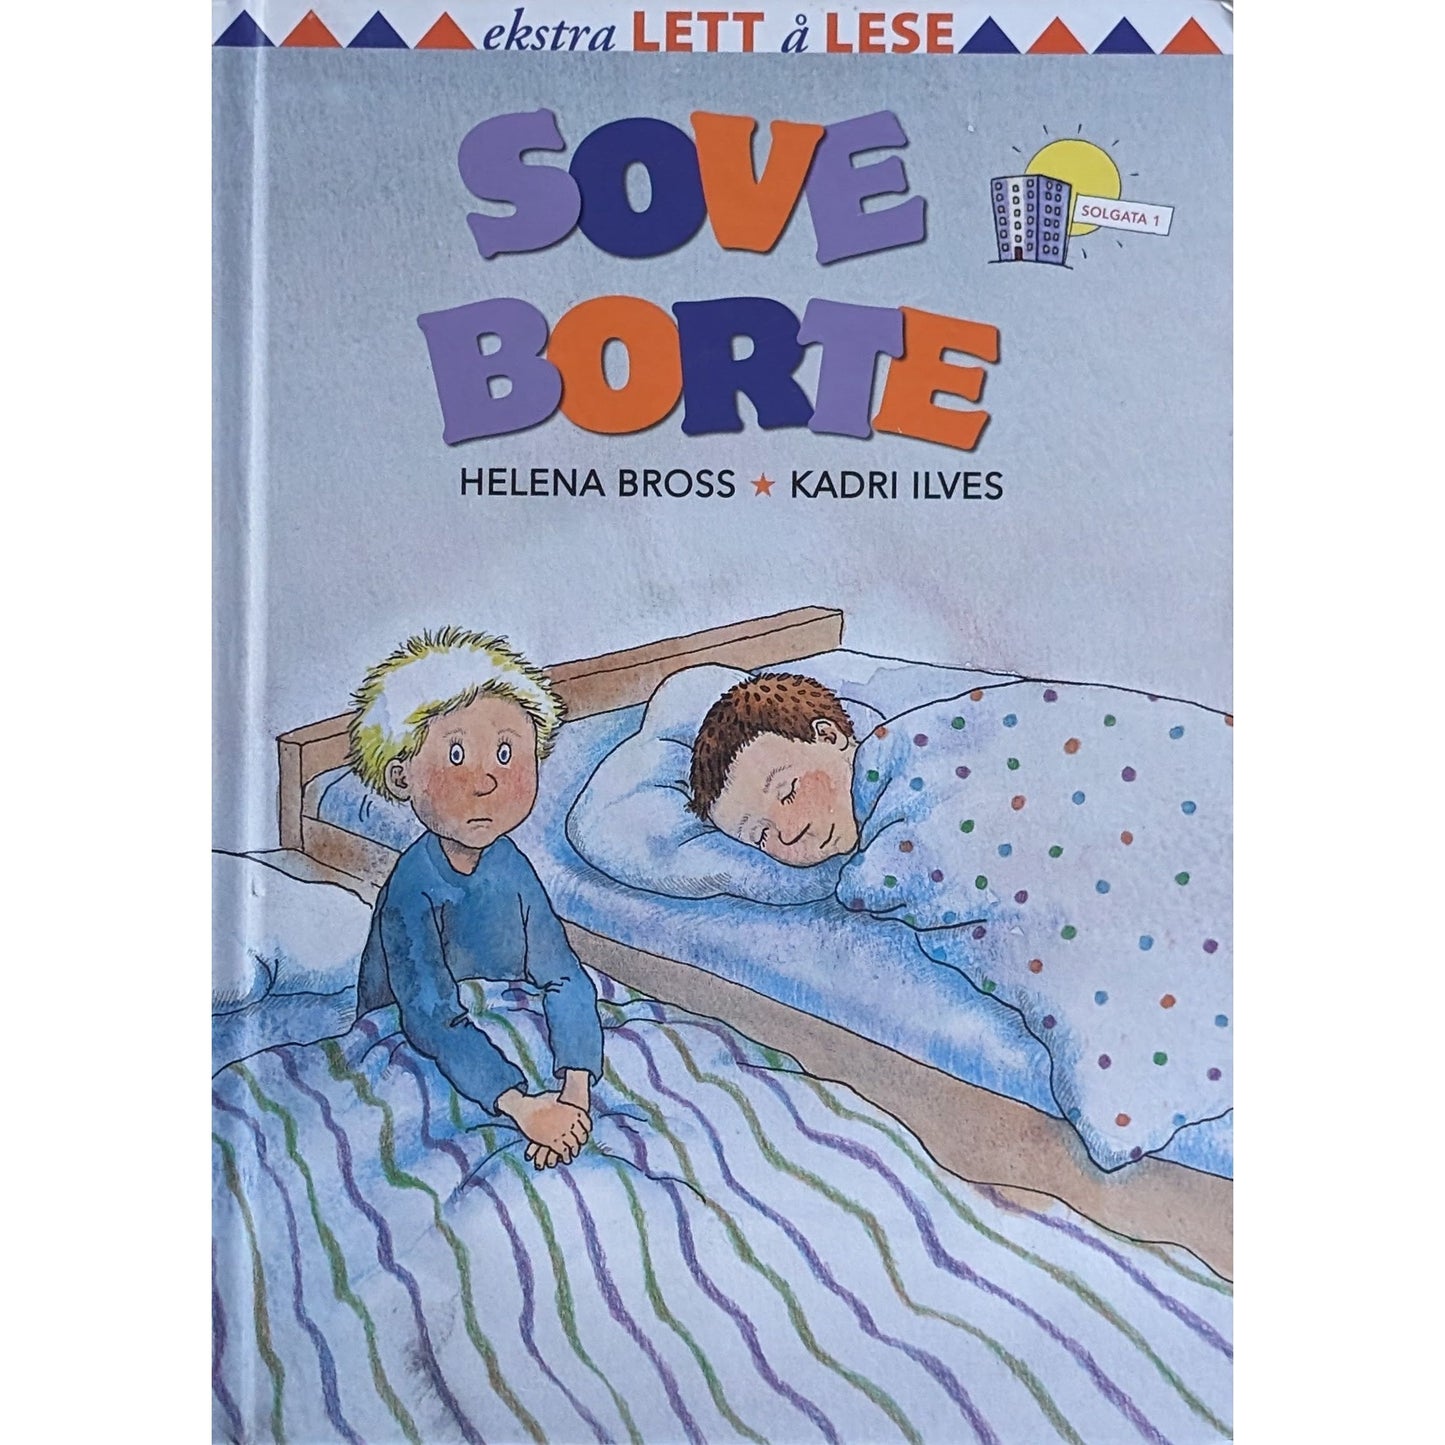 Sove borte, Brukte bøker av Helena Bross og Kadri Ilves